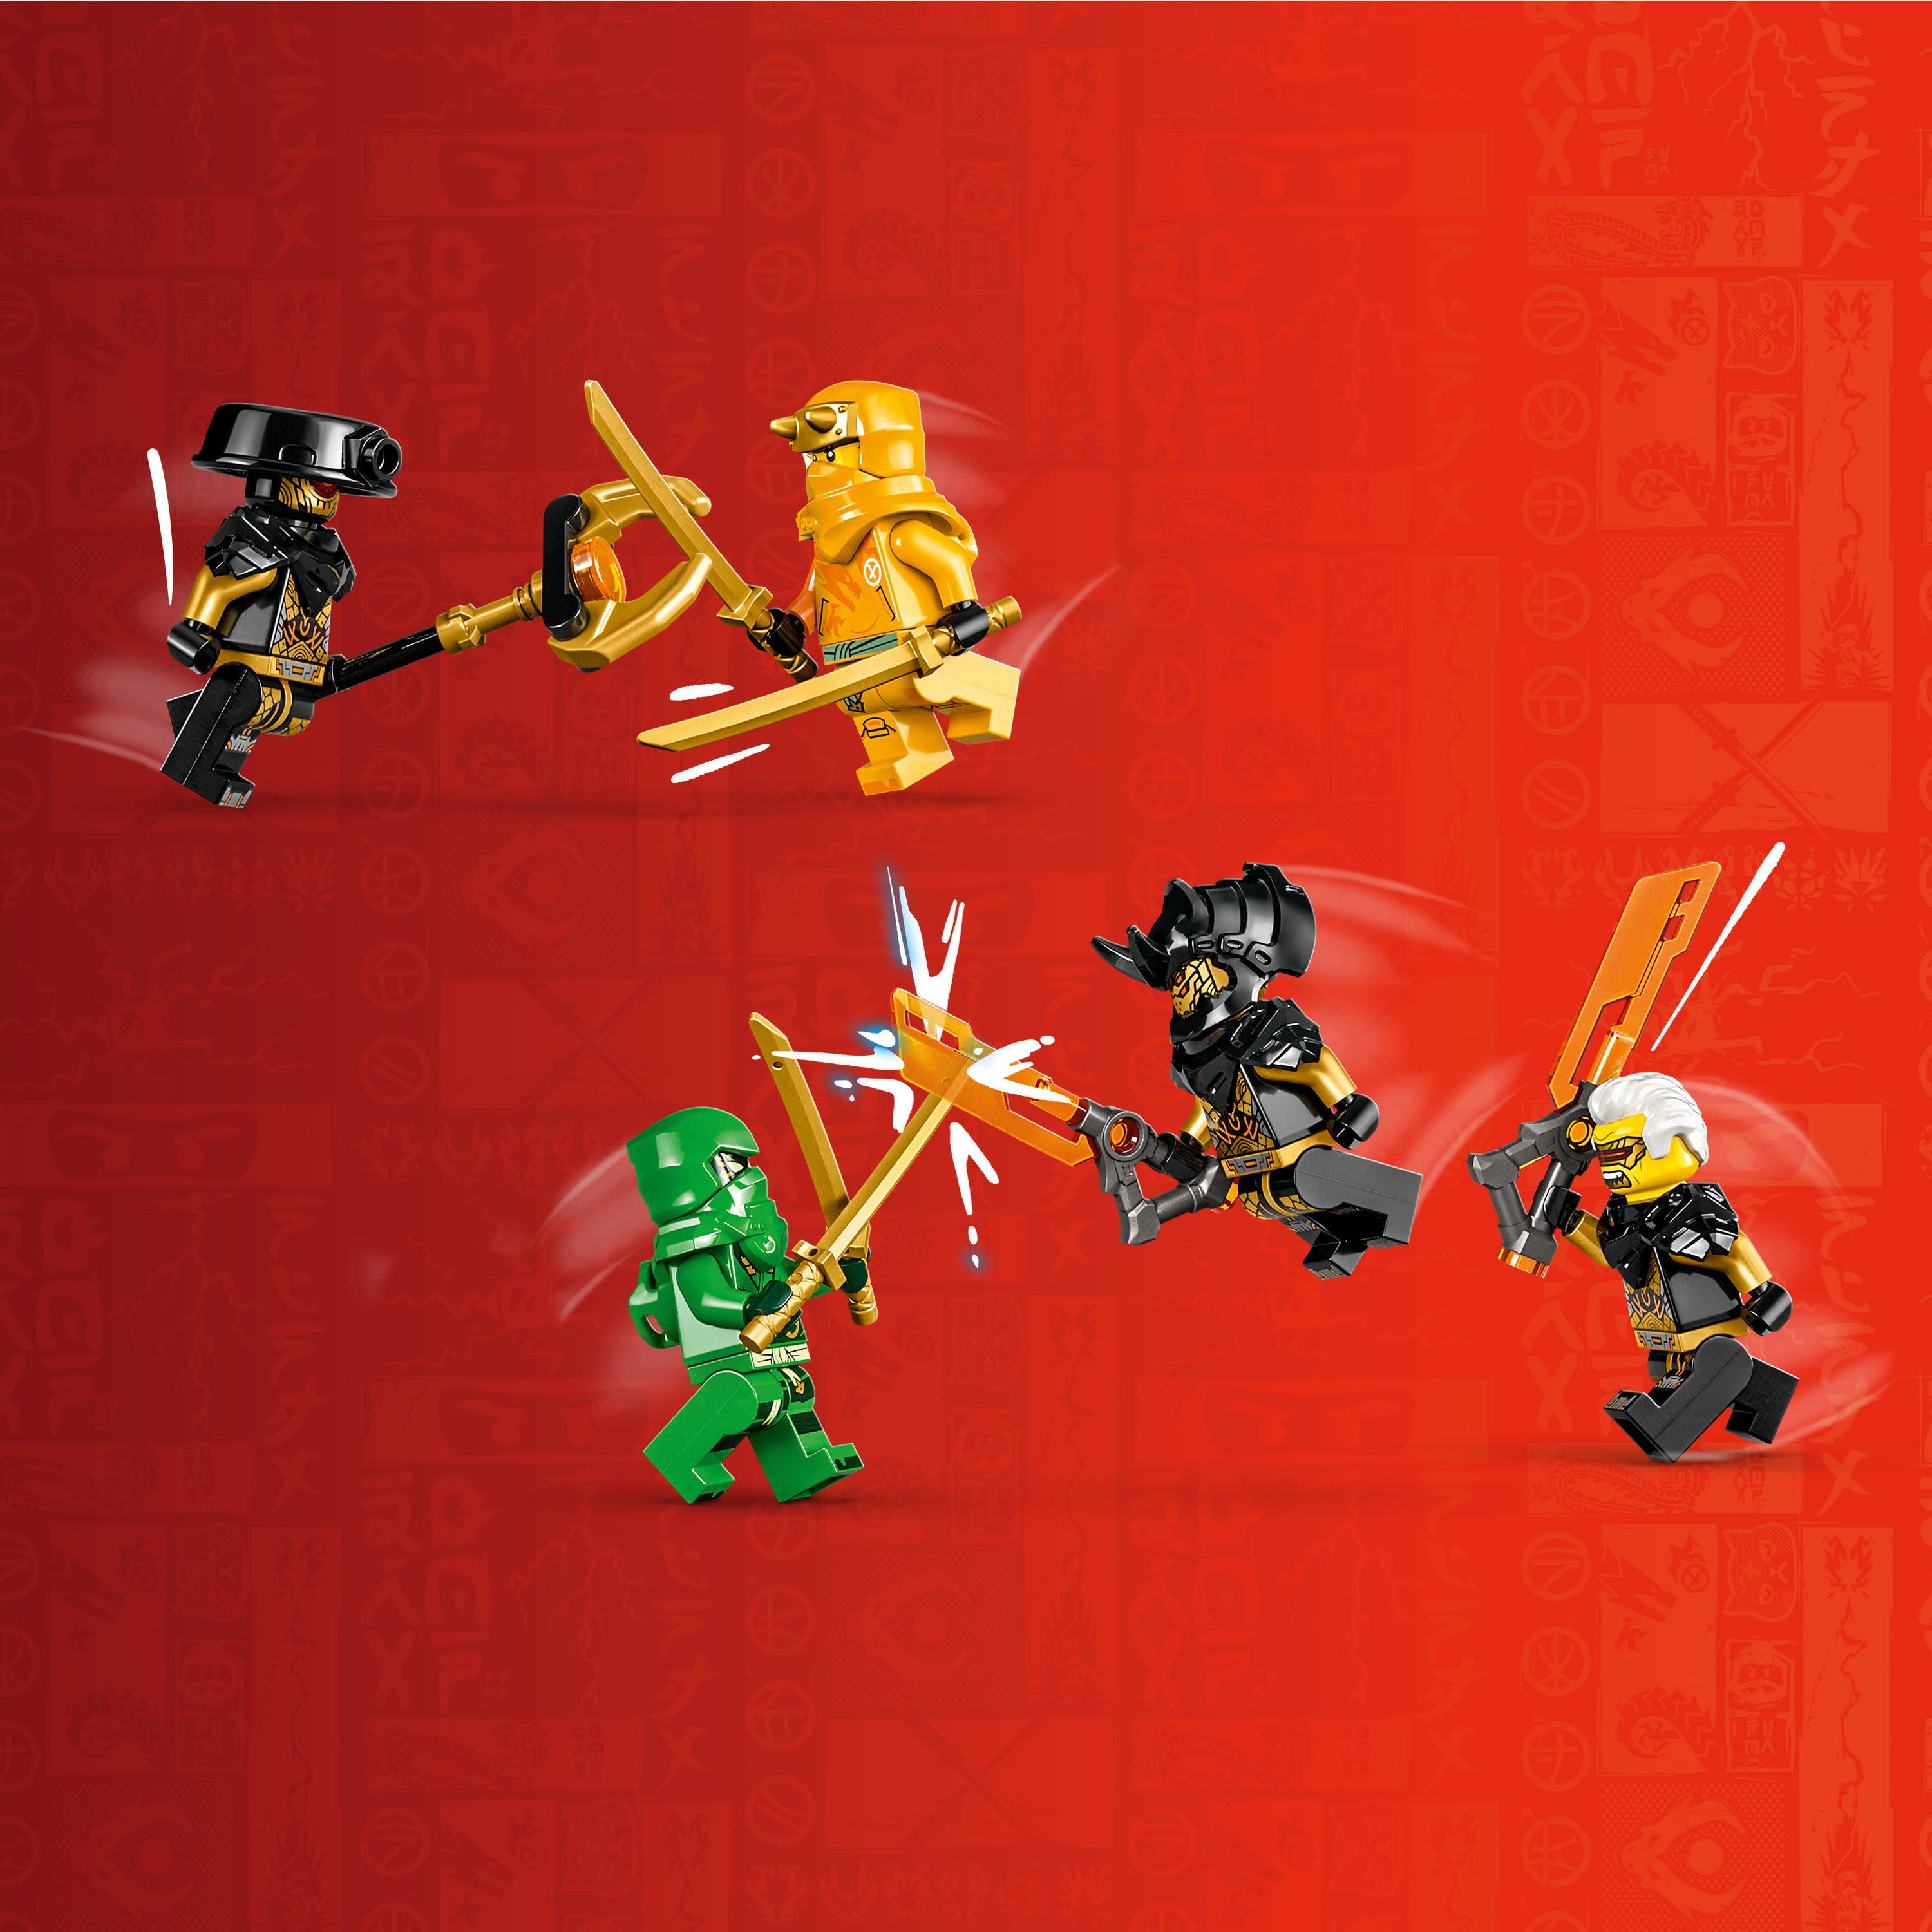 Lego Ninjago Lloyd And Arin's Ninja Team Mechs Ninja Building Toy 71794 :  Target